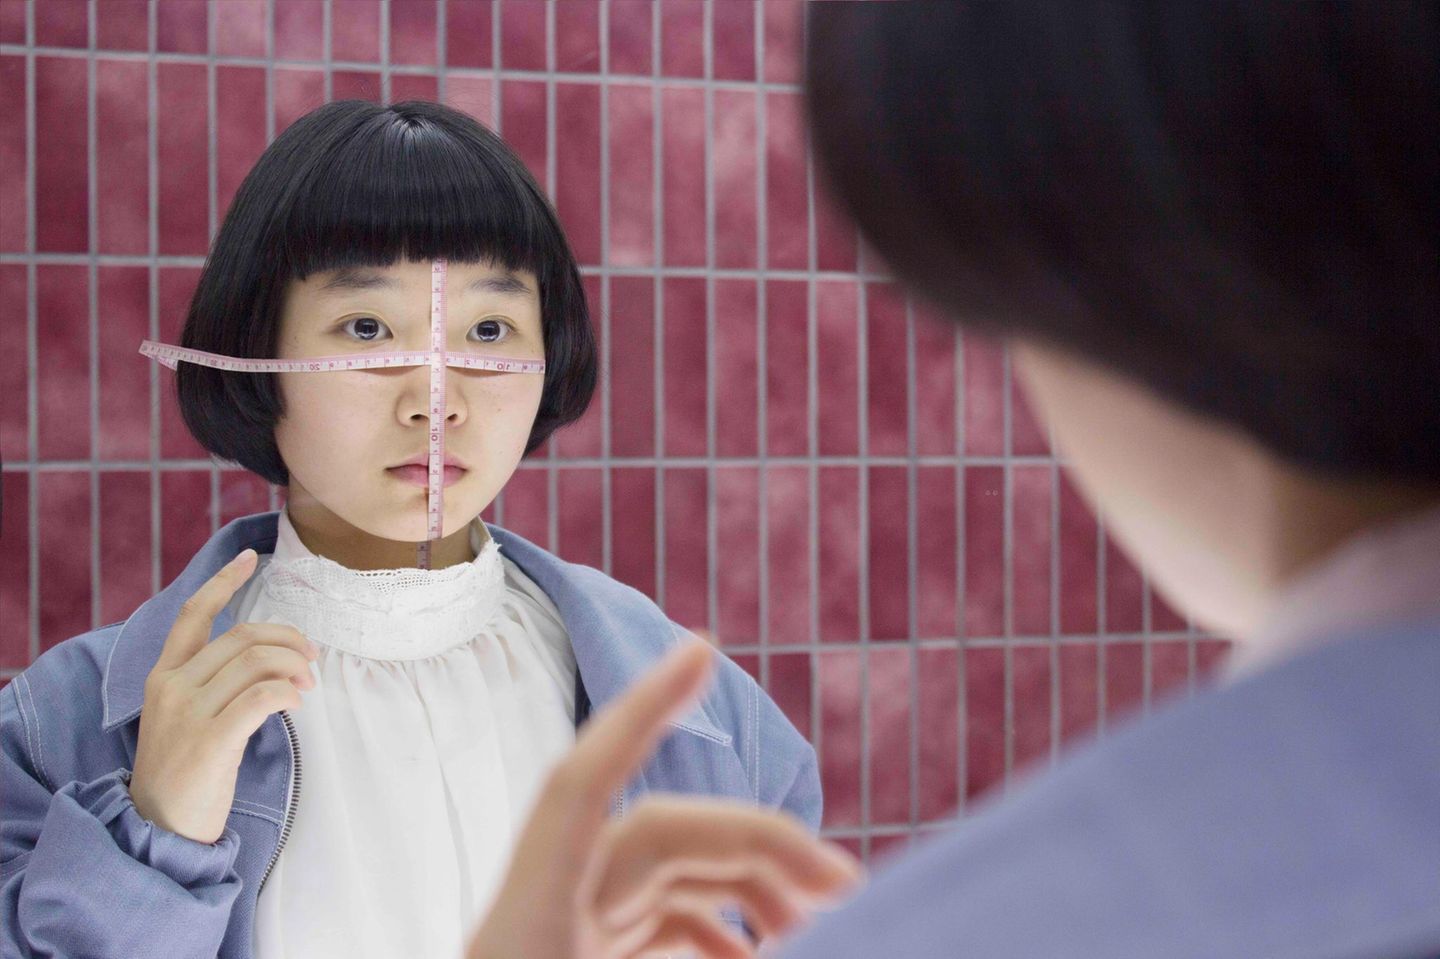 Die Selbstporträts der Japanerin sind surreal und kritisch. Das Bild "Measure" erinnert an den ständigen Druck, den vor allem viele junge Frauen verspüren, immer perfekt auf ihren Selfies in den sozialen Netzwerken auszusehen.